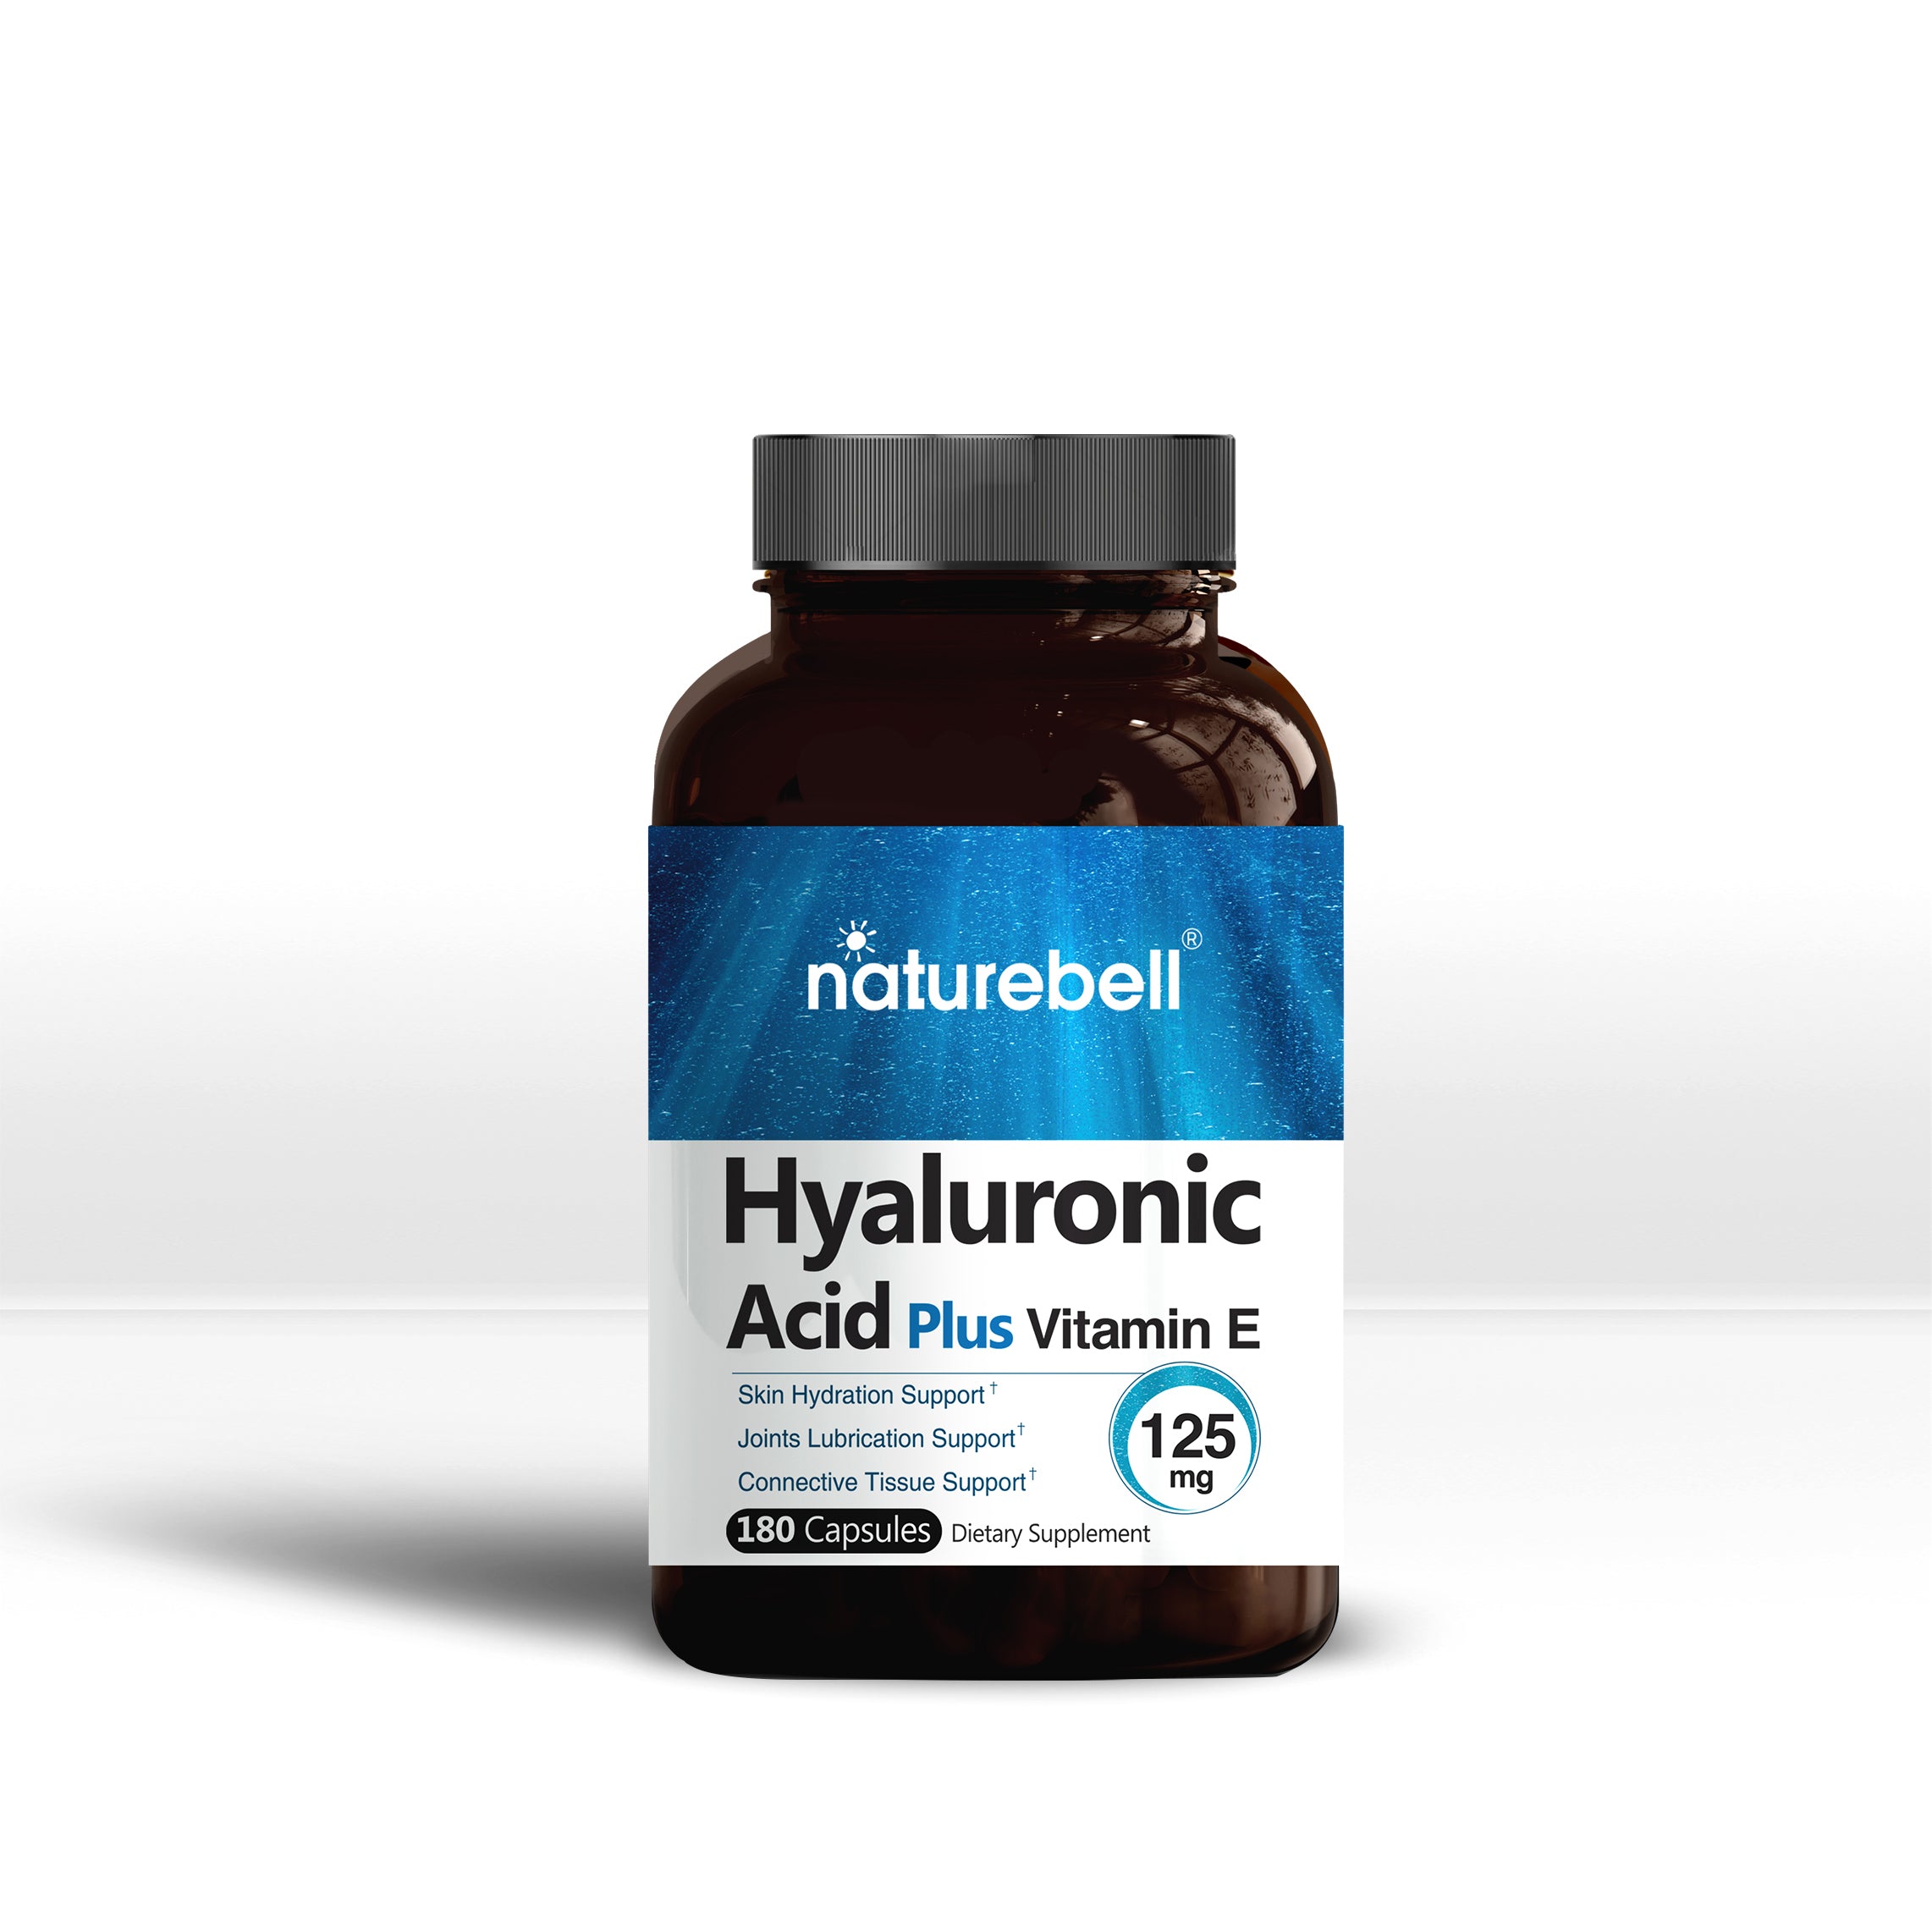 NatureBell Hyaluronic Acid Plus